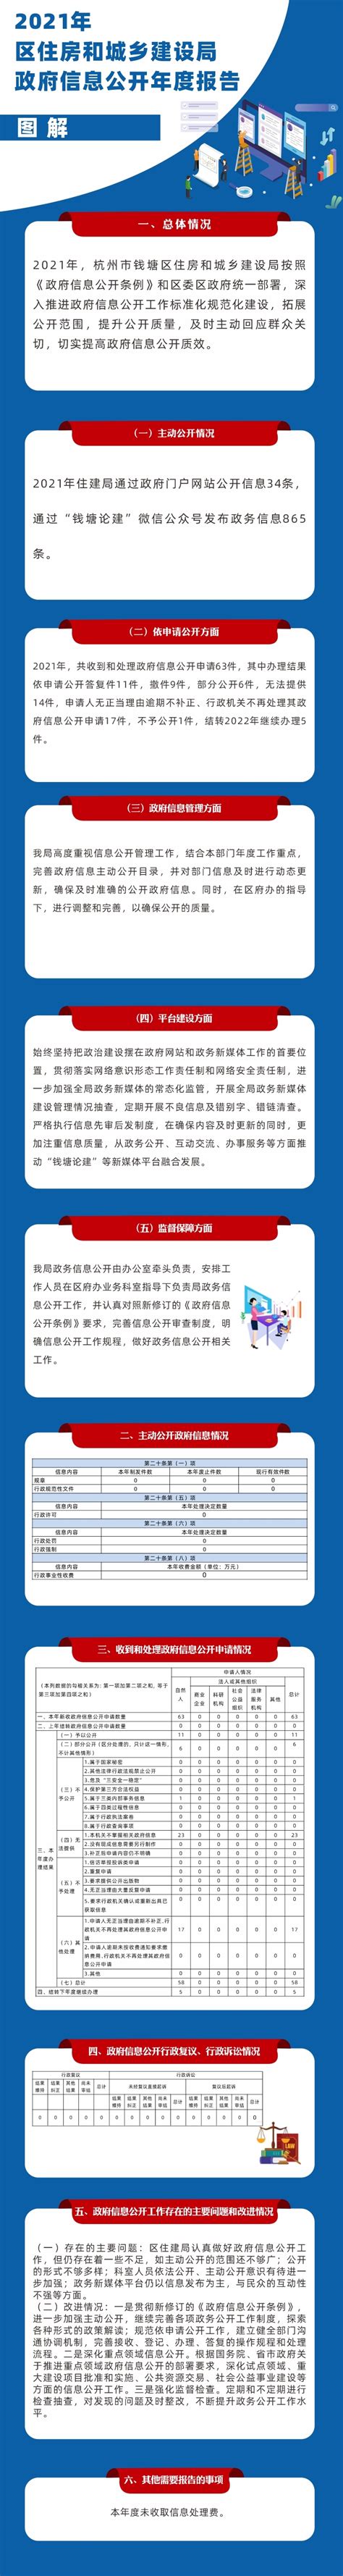 工程 | 北京市建委今日发布2020年11月工程造价信息-搜狐大视野-搜狐新闻